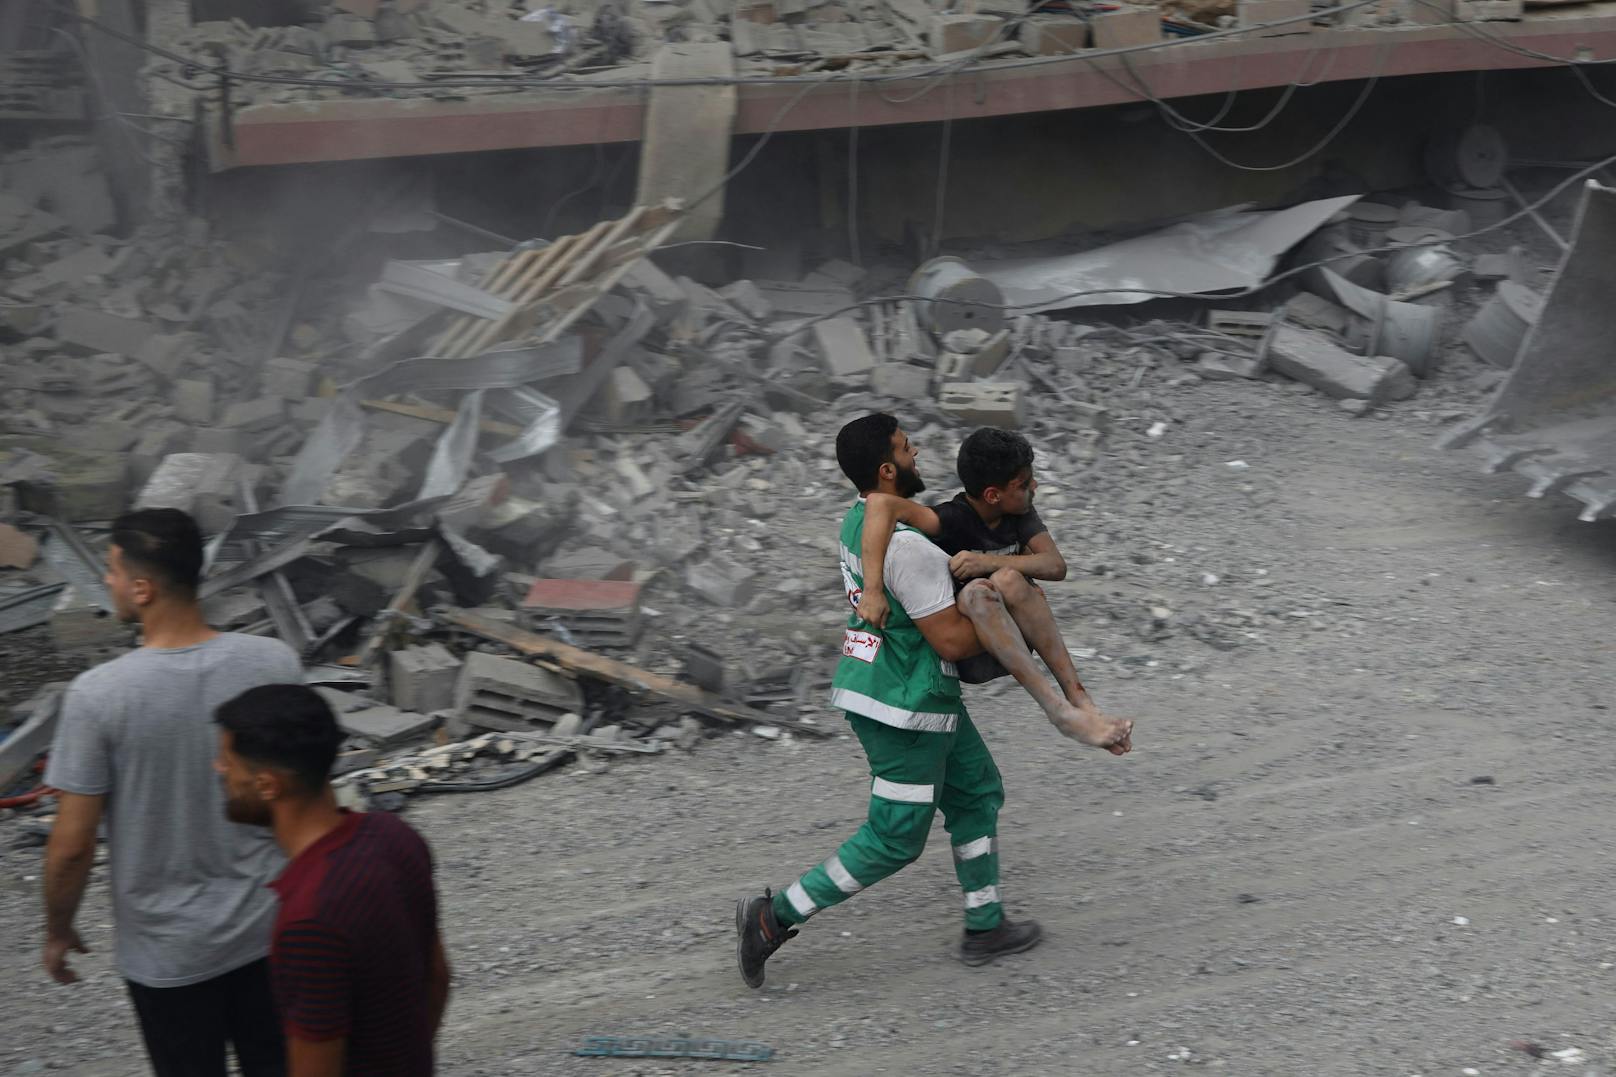 Ein Mitglied des palästinensischen Zivilschutzes rettet einen verwundeten Jungen aus den Trümmern eines Hauses.